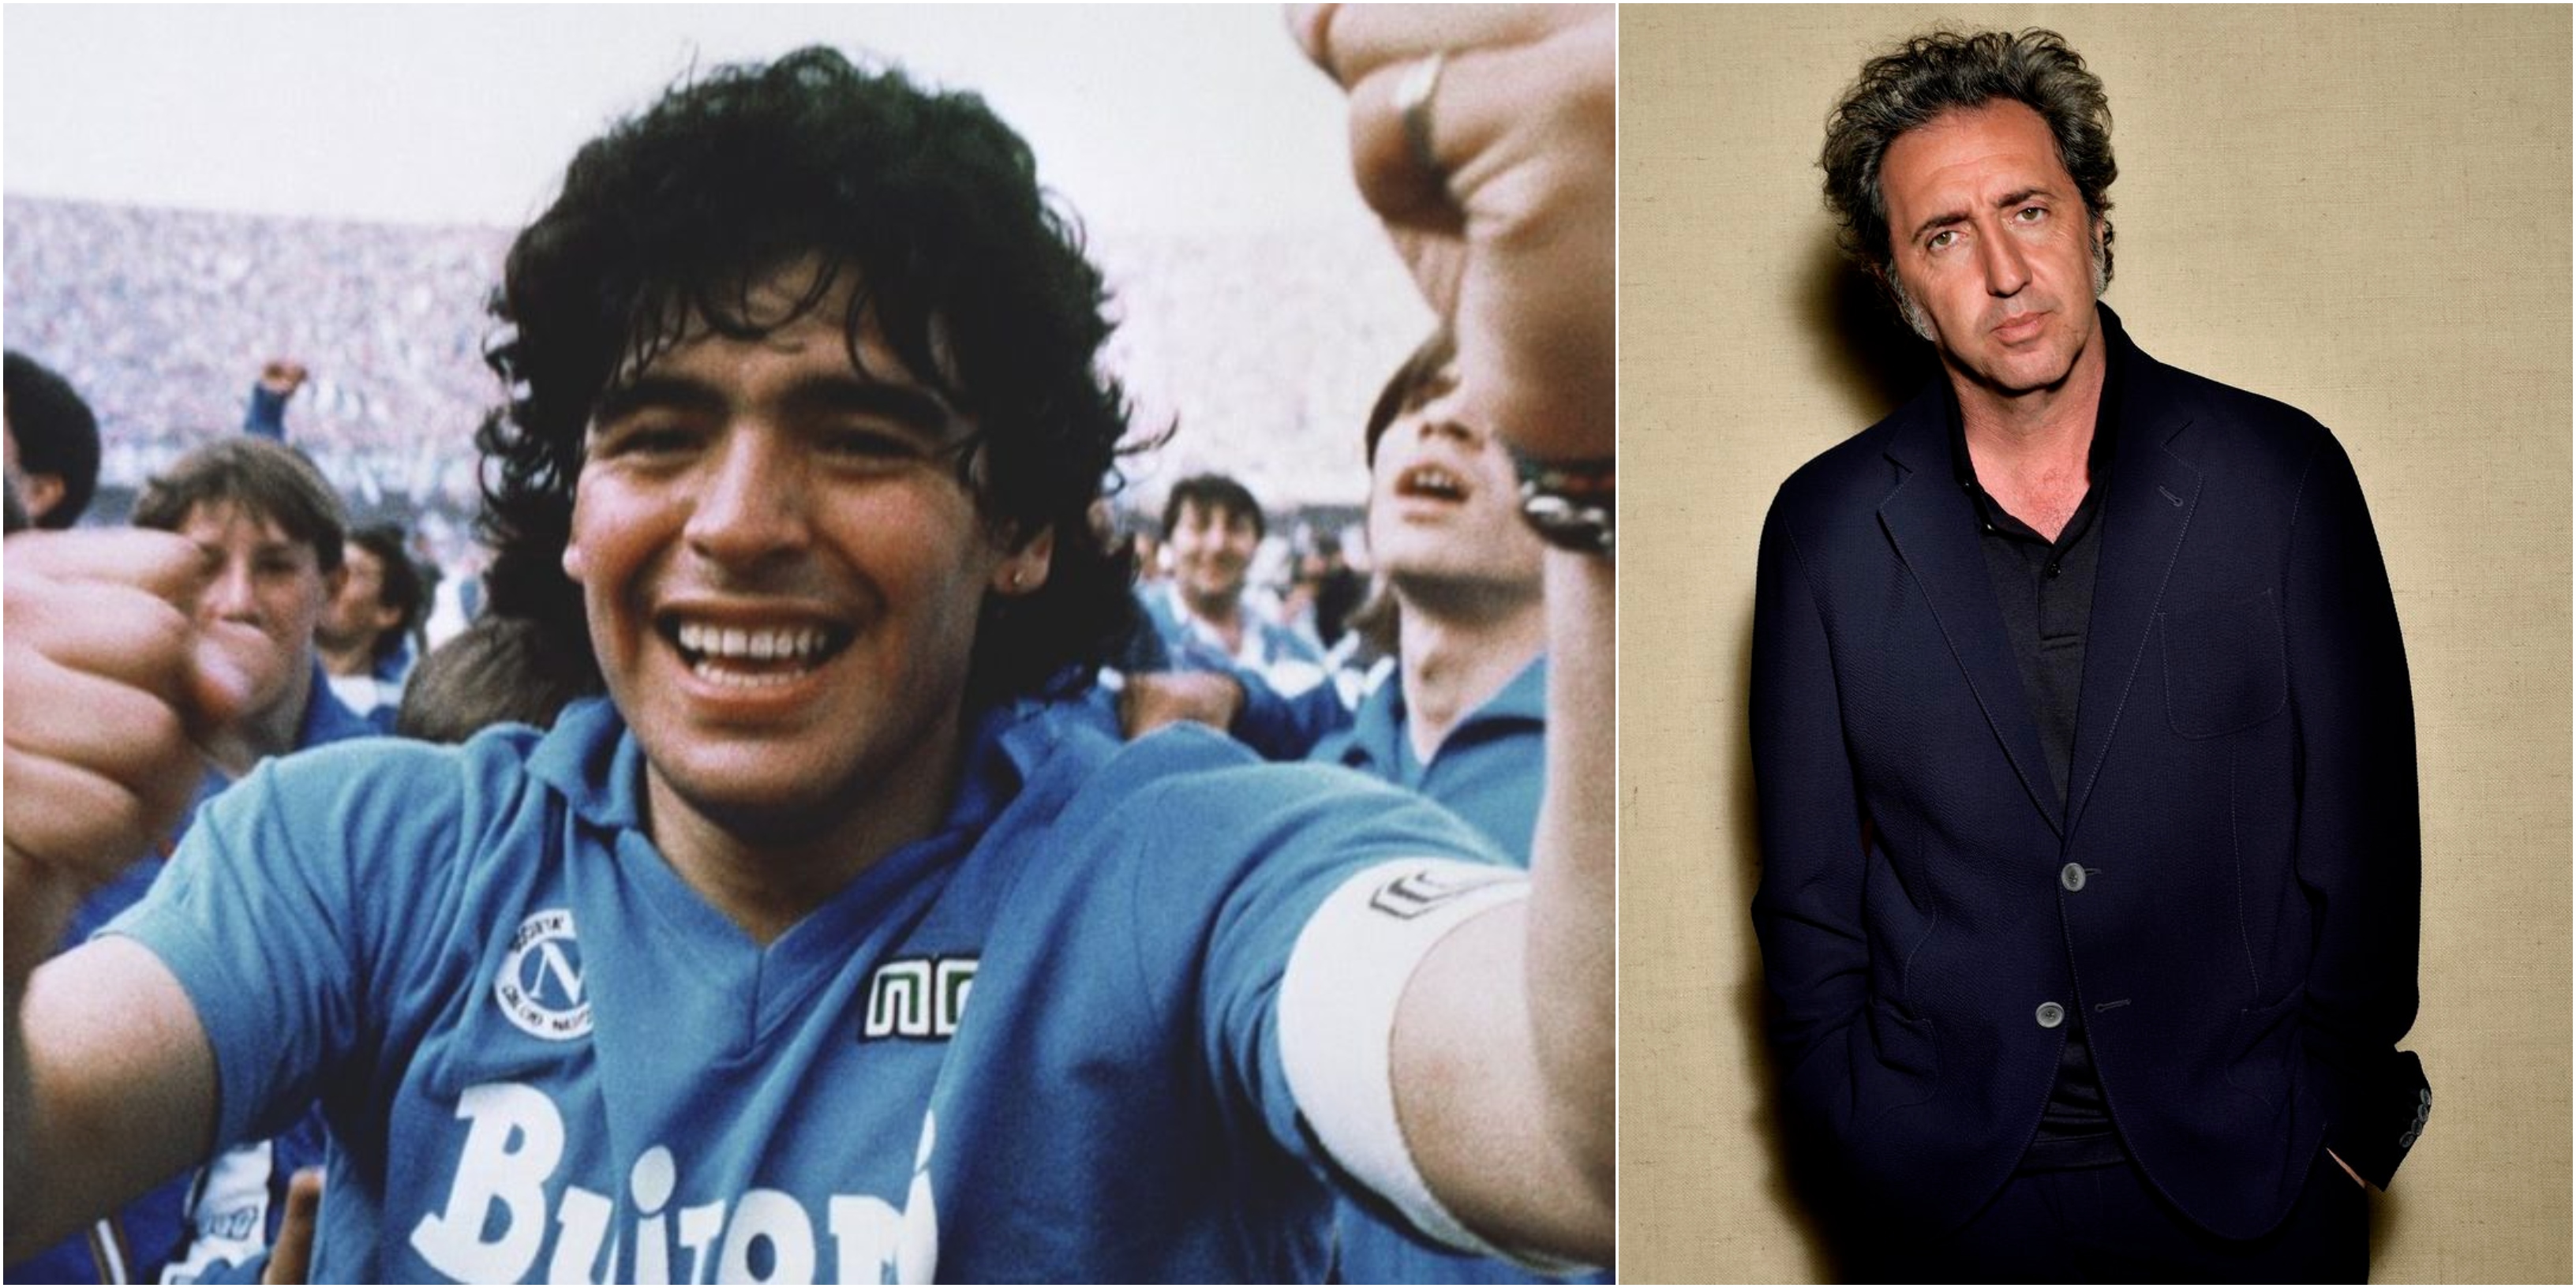 Maradona si oppone al film di Sorrentino: niente autorizzazione ad usare la sua immagine